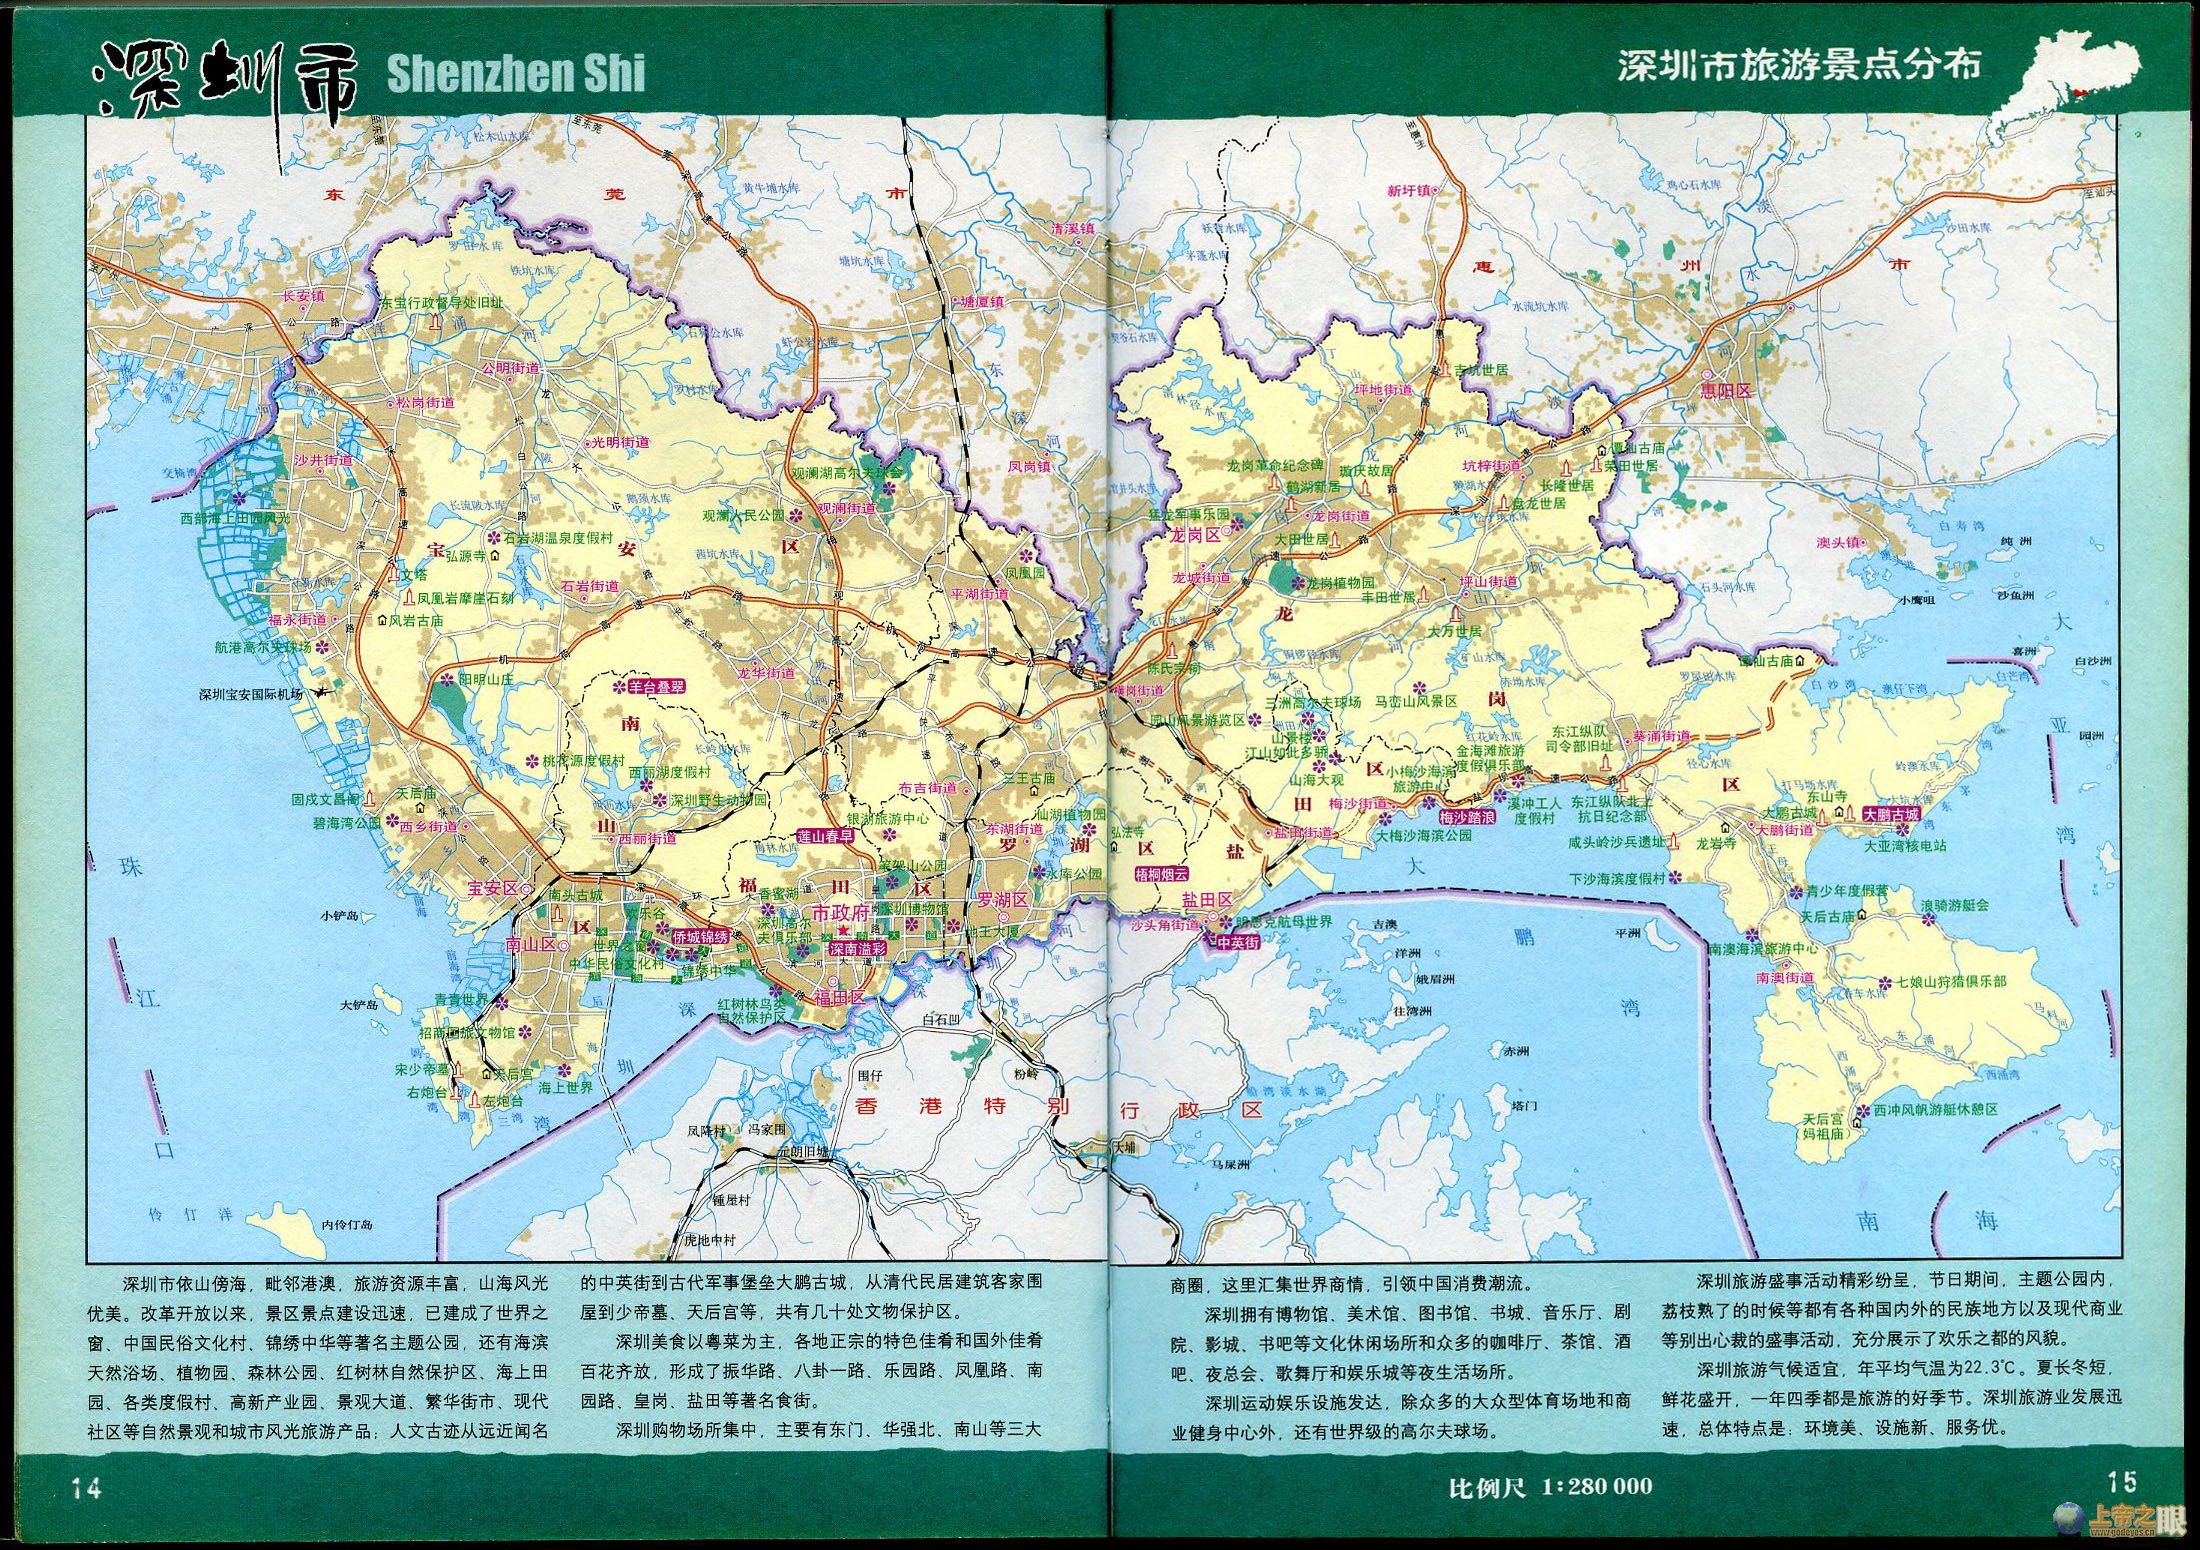 深圳旅游景点分布图